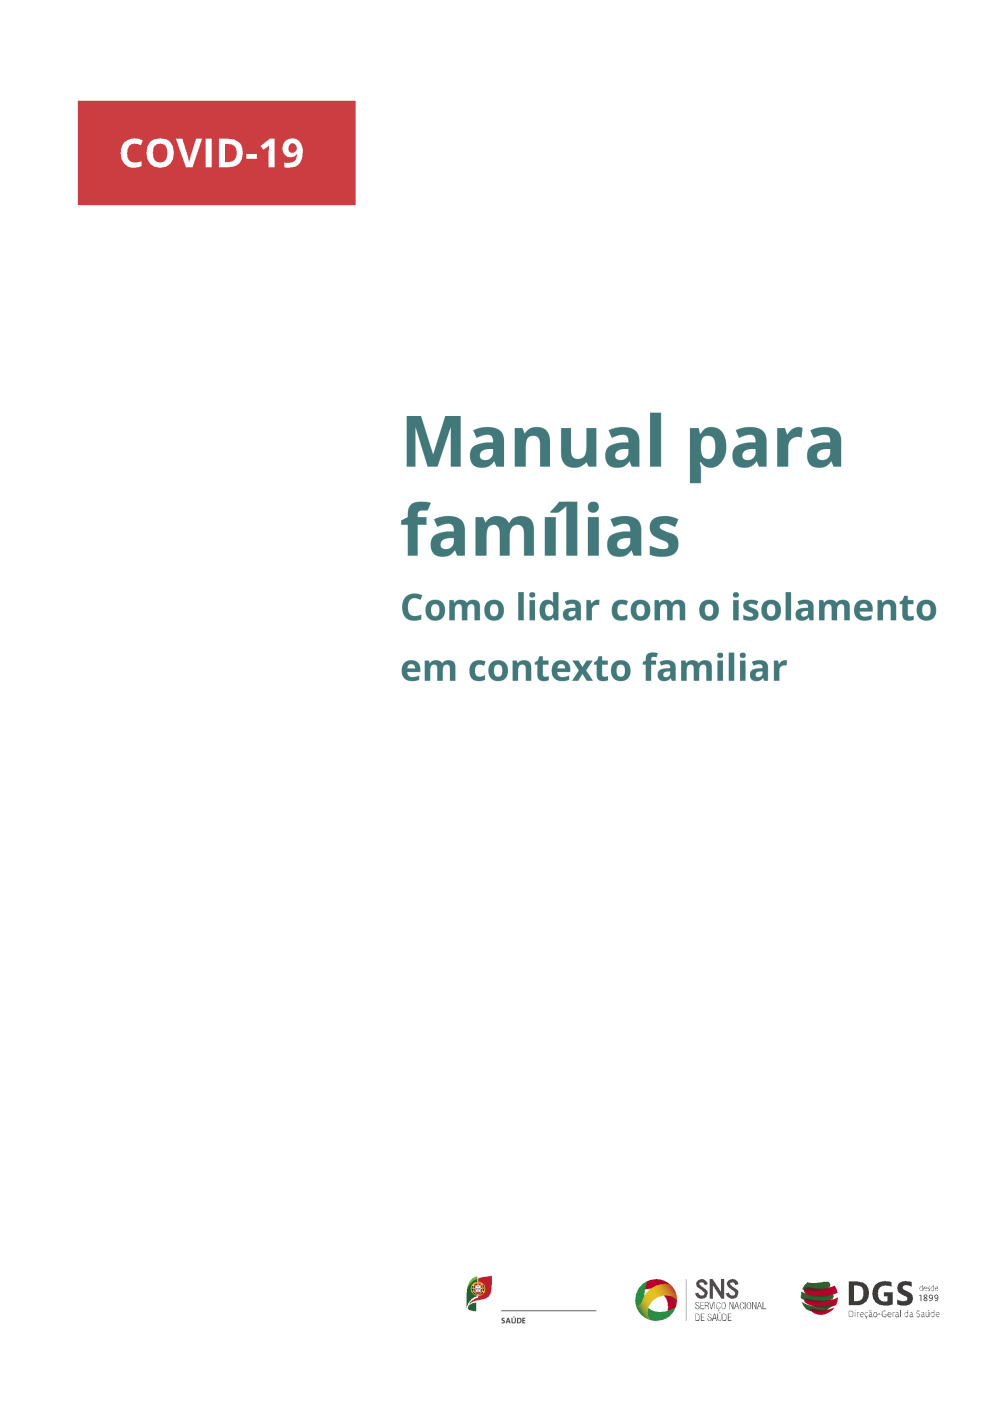 Manual para famílias - como lidar com o isolamento em contexto familiar